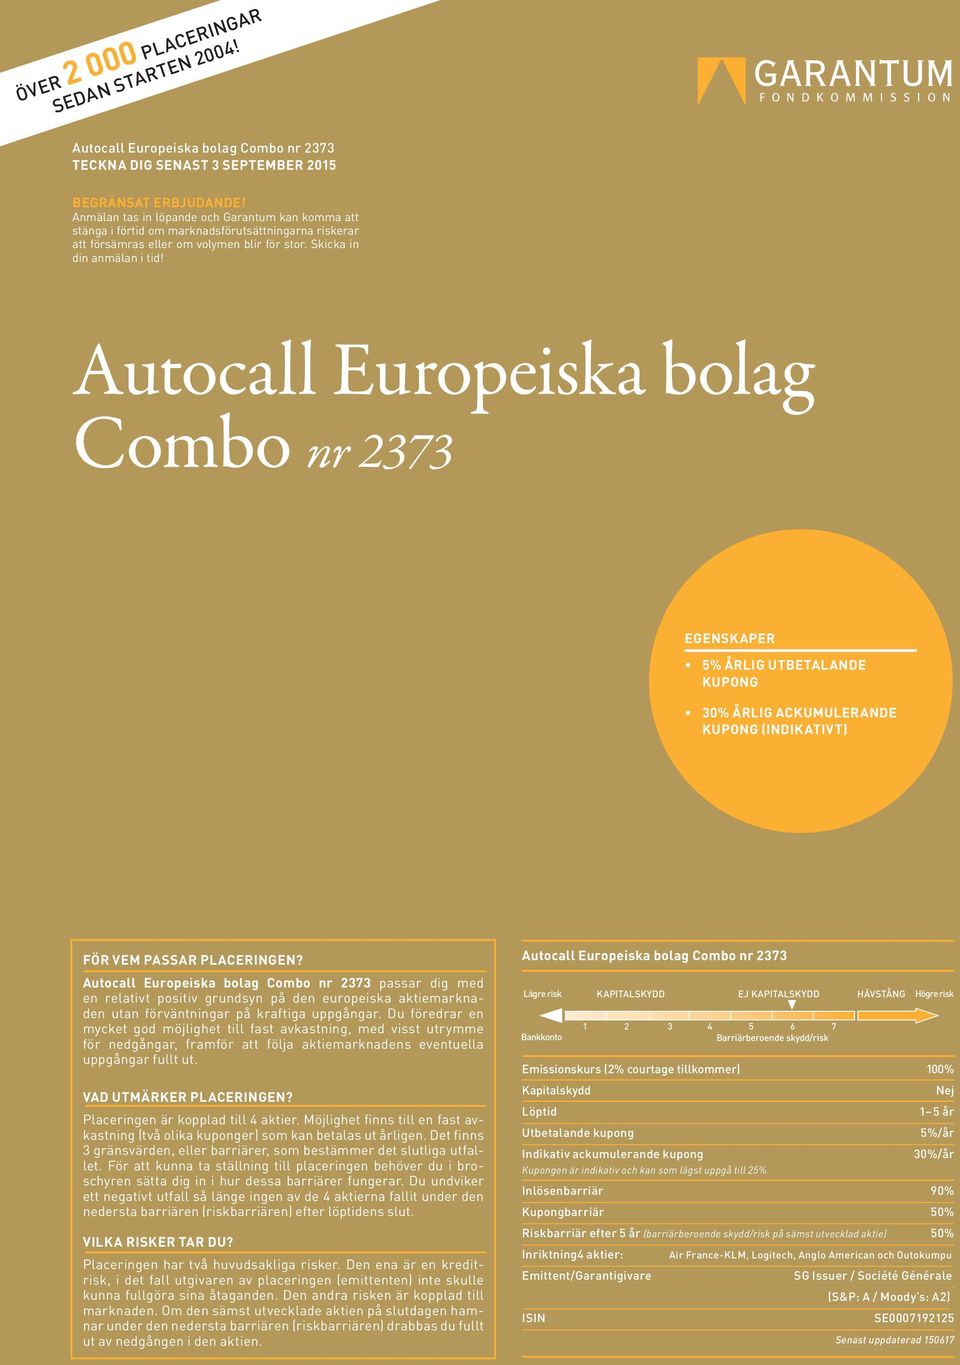 Autocall Europeiska bolag Combo nr 2373 EGENSKAPER 5% ÅRLIG UTBETALANDE KUPONG 30% ÅRLIG ACKUMULERANDE KUPONG (INDIKATIVT) FÖR VEM PASSAR PLACERINGEN?